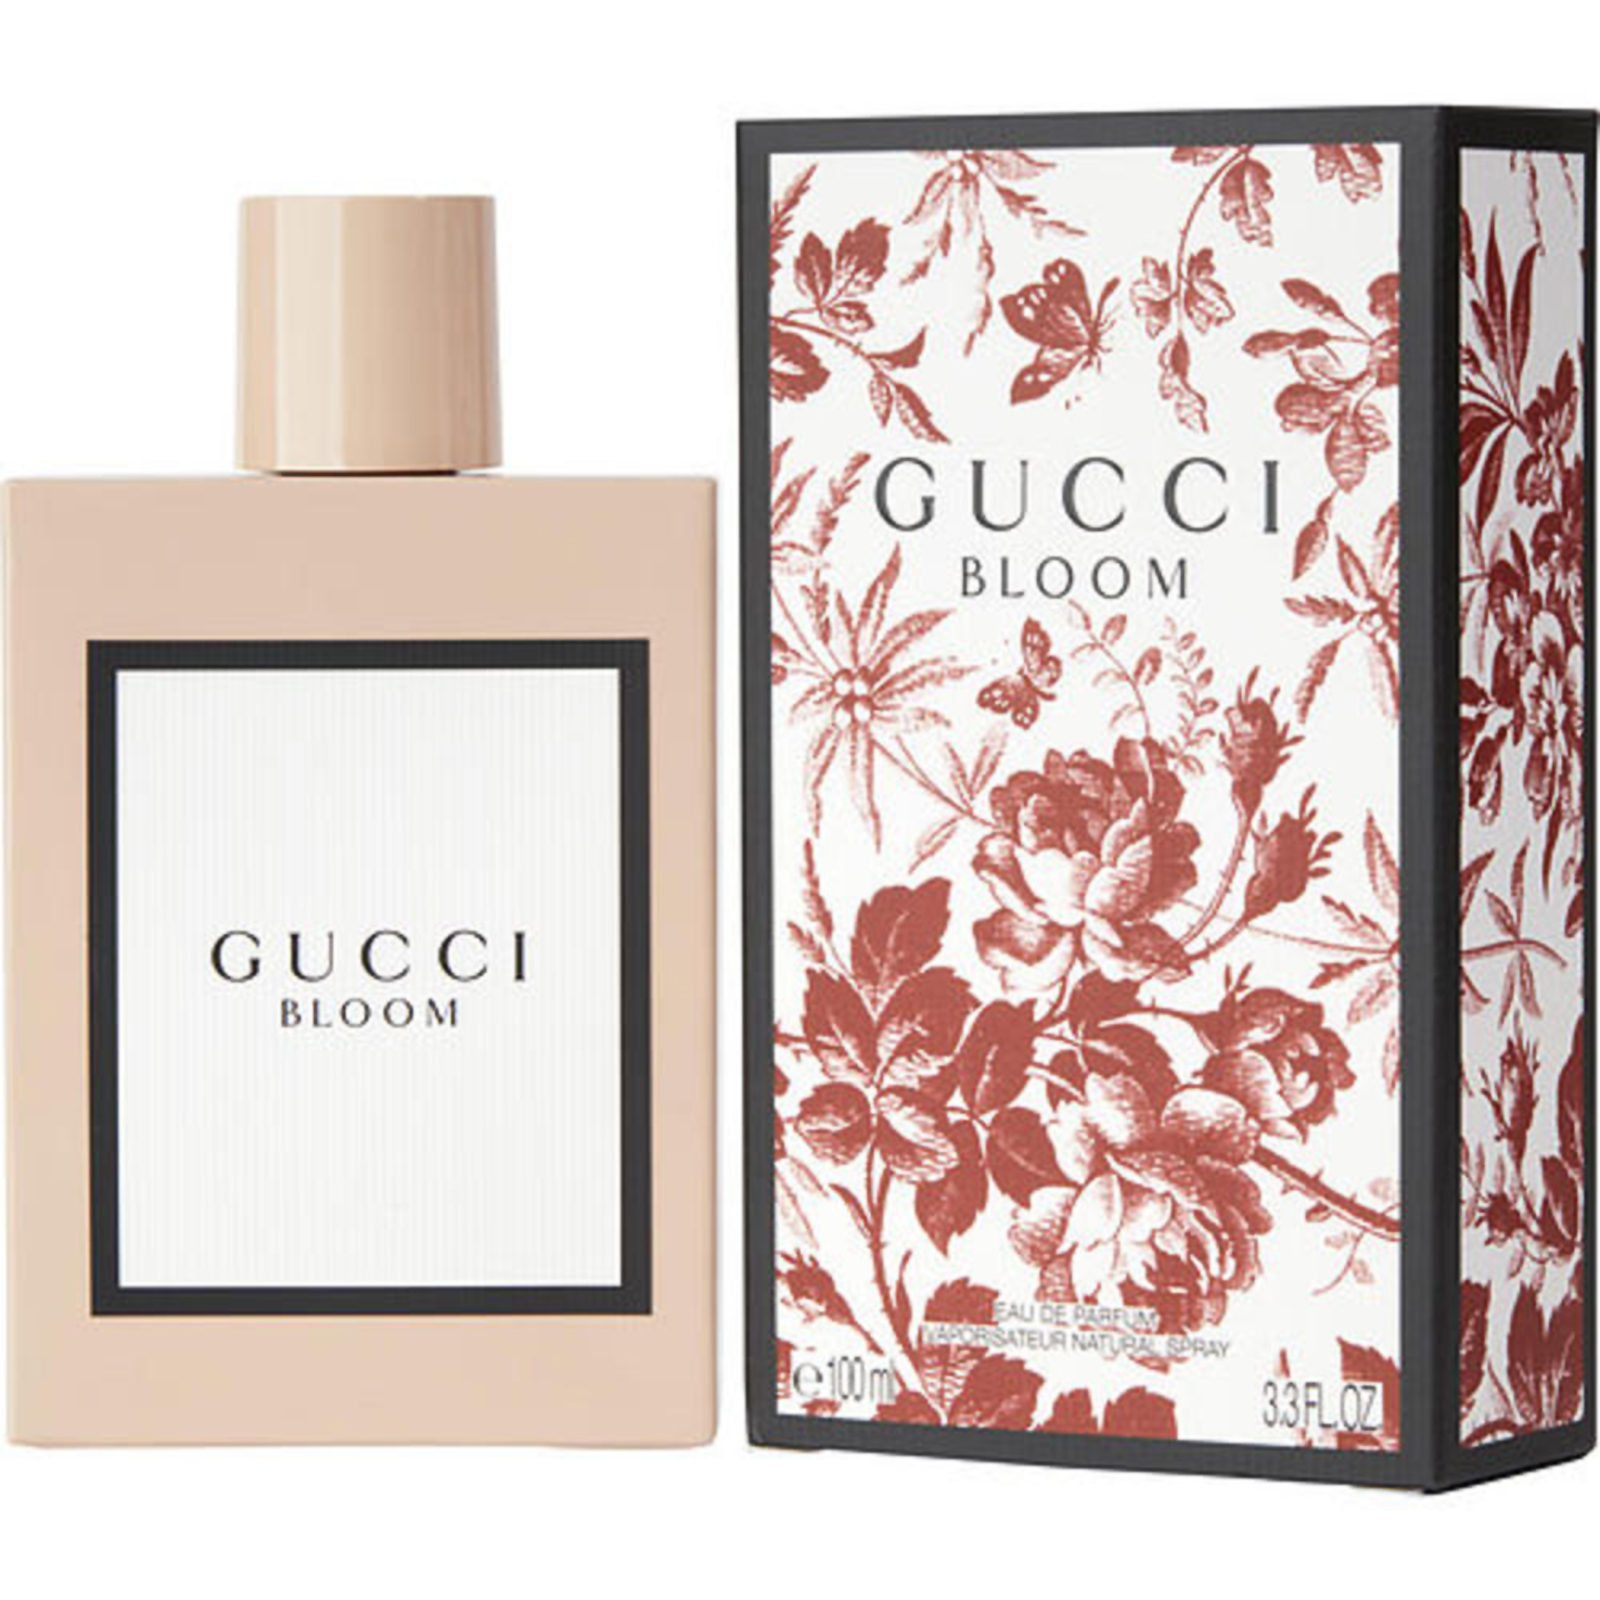 Gucci 3.3oz Bloom Eau de Parfum